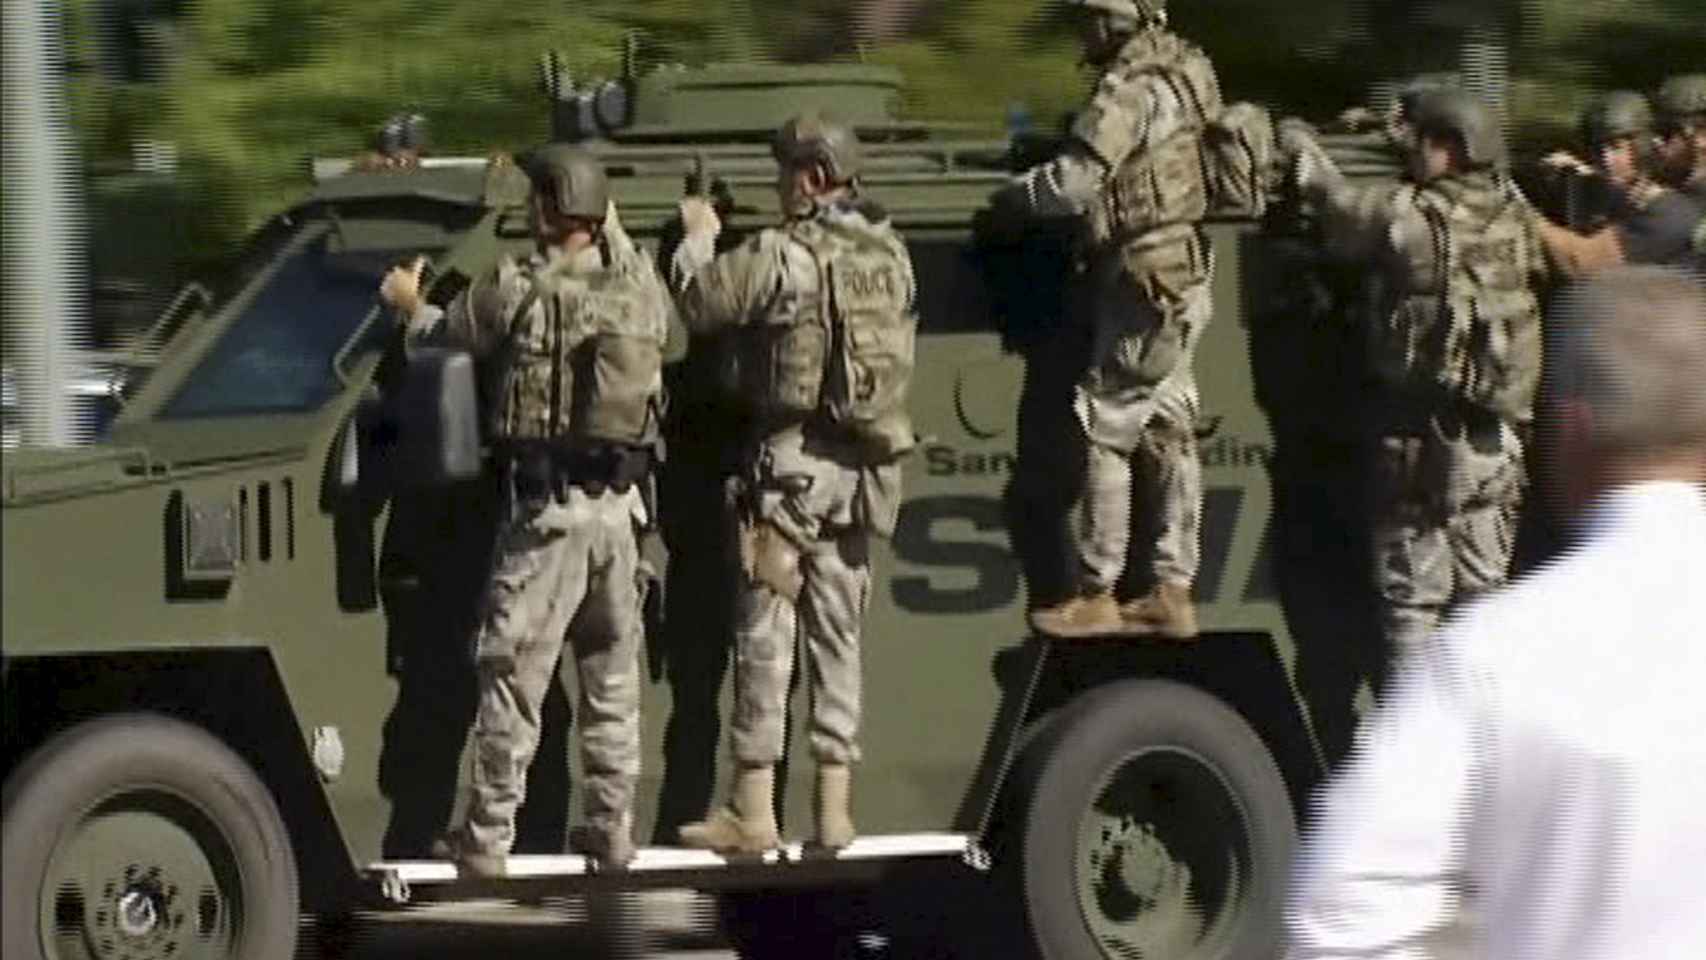 Un equipo de los SWAT de camino a la zona del tiroteo